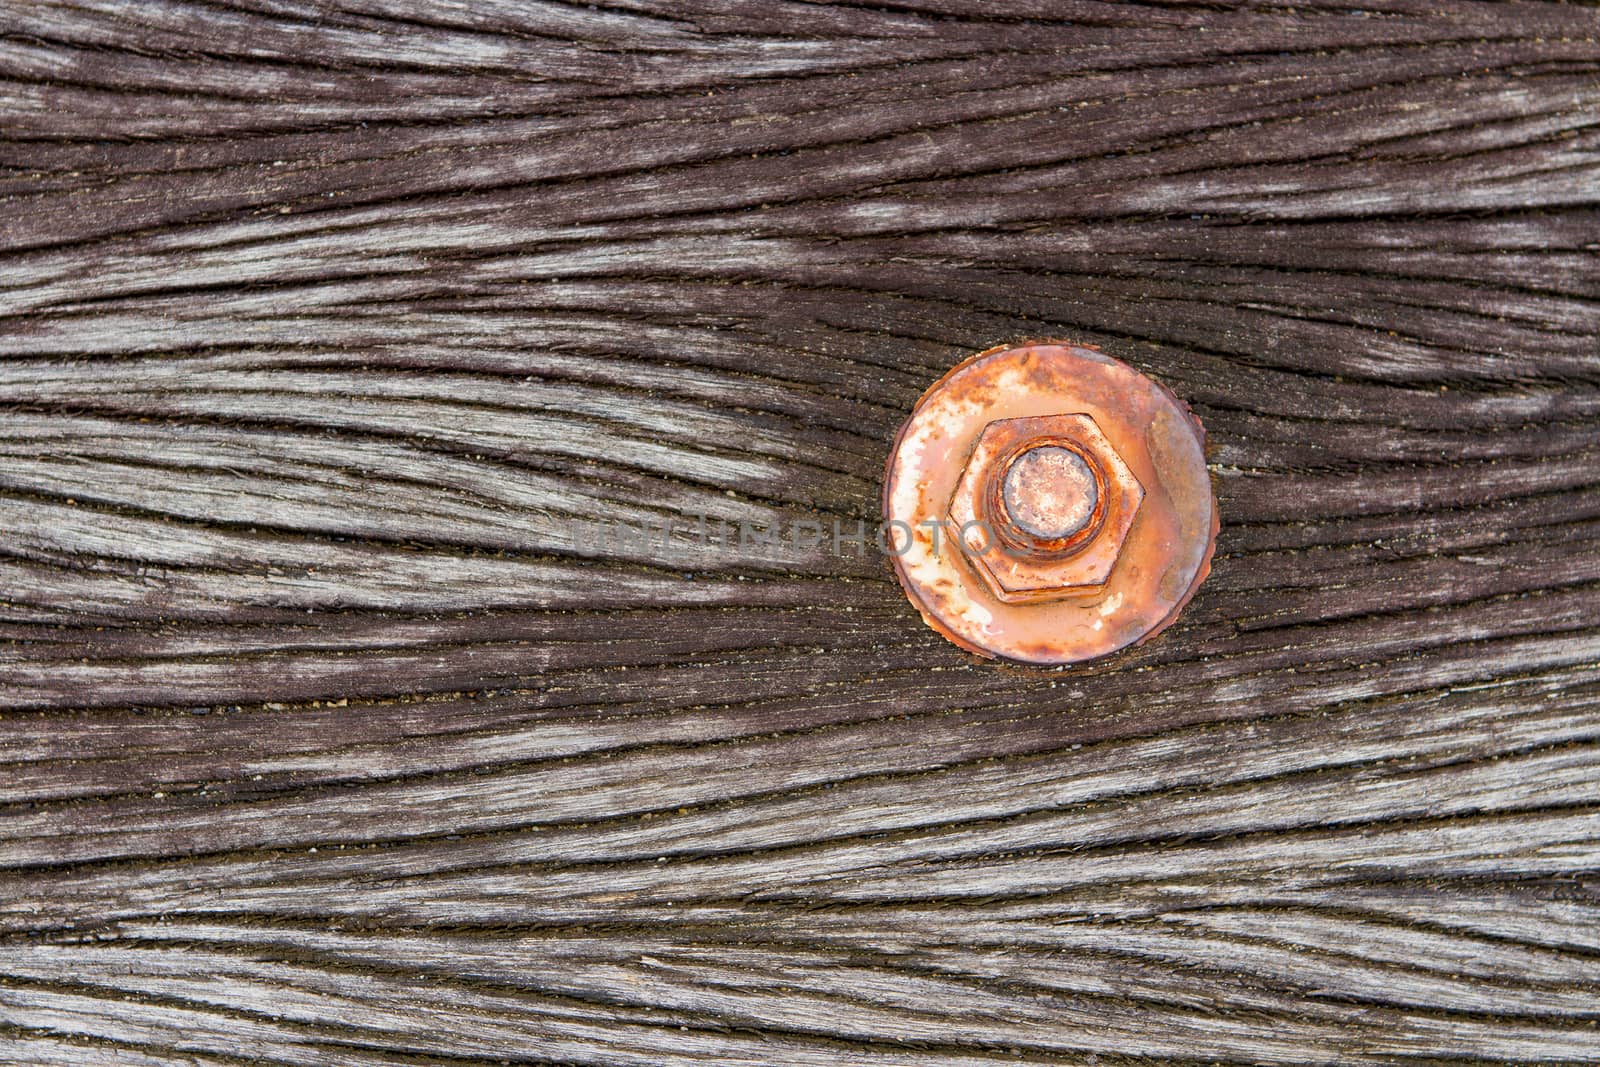 The nut is rust on old wood floor. by TakerWalker